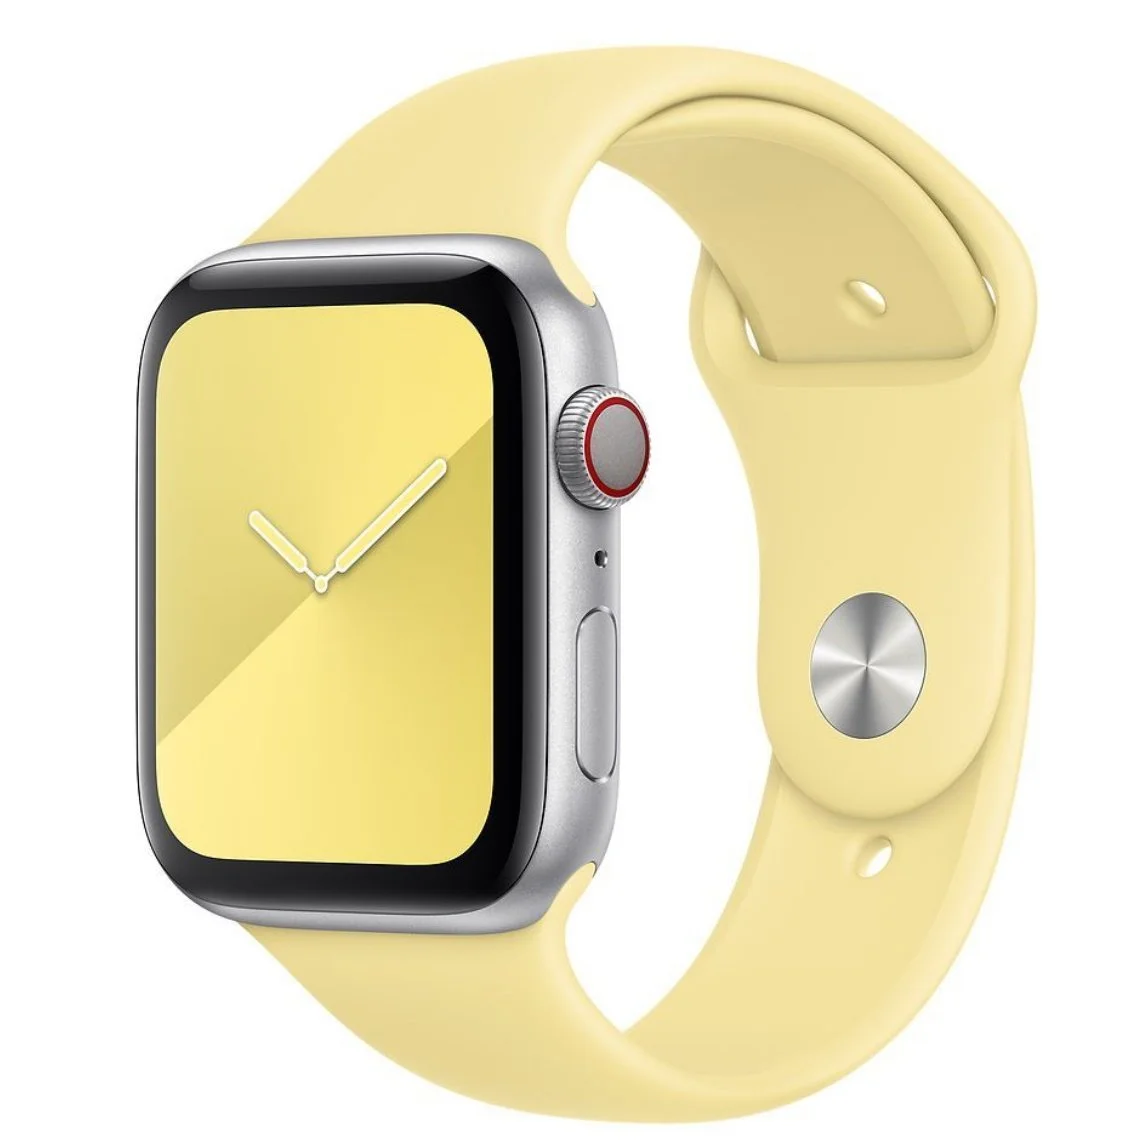 Řemínek iMore SmoothBand pro Apple Watch Series 1/2/3 (38mm) - Citrusově žlutý